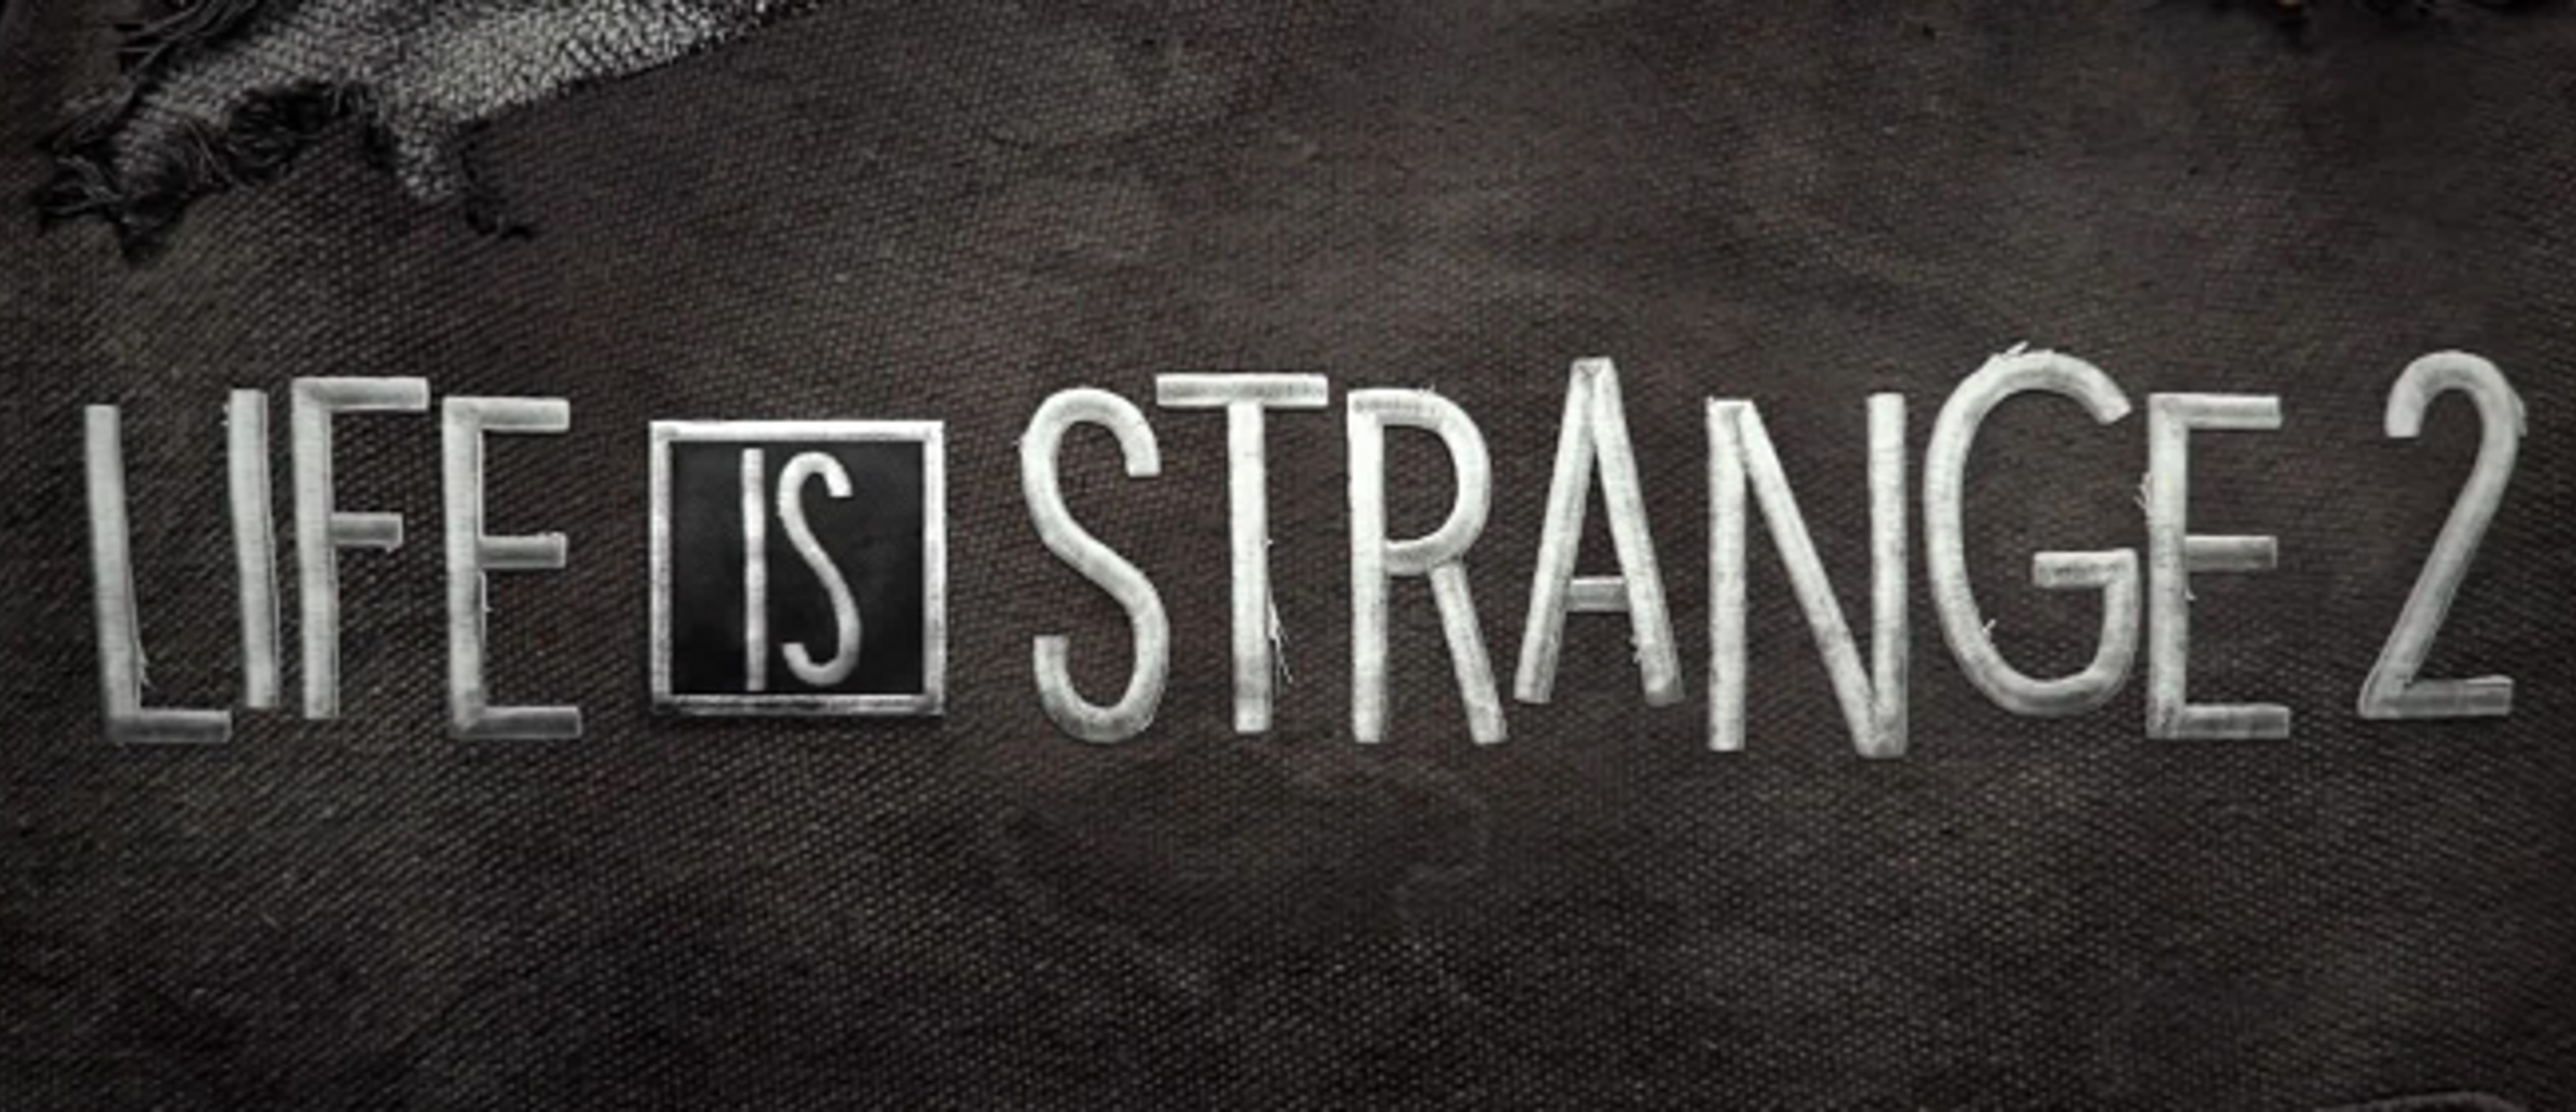 Life is 2 1. Life Strange 2. Life is Strange 2 эпизод 2. Life is Strange 2 логотип. Life is Strange 2 Постер.